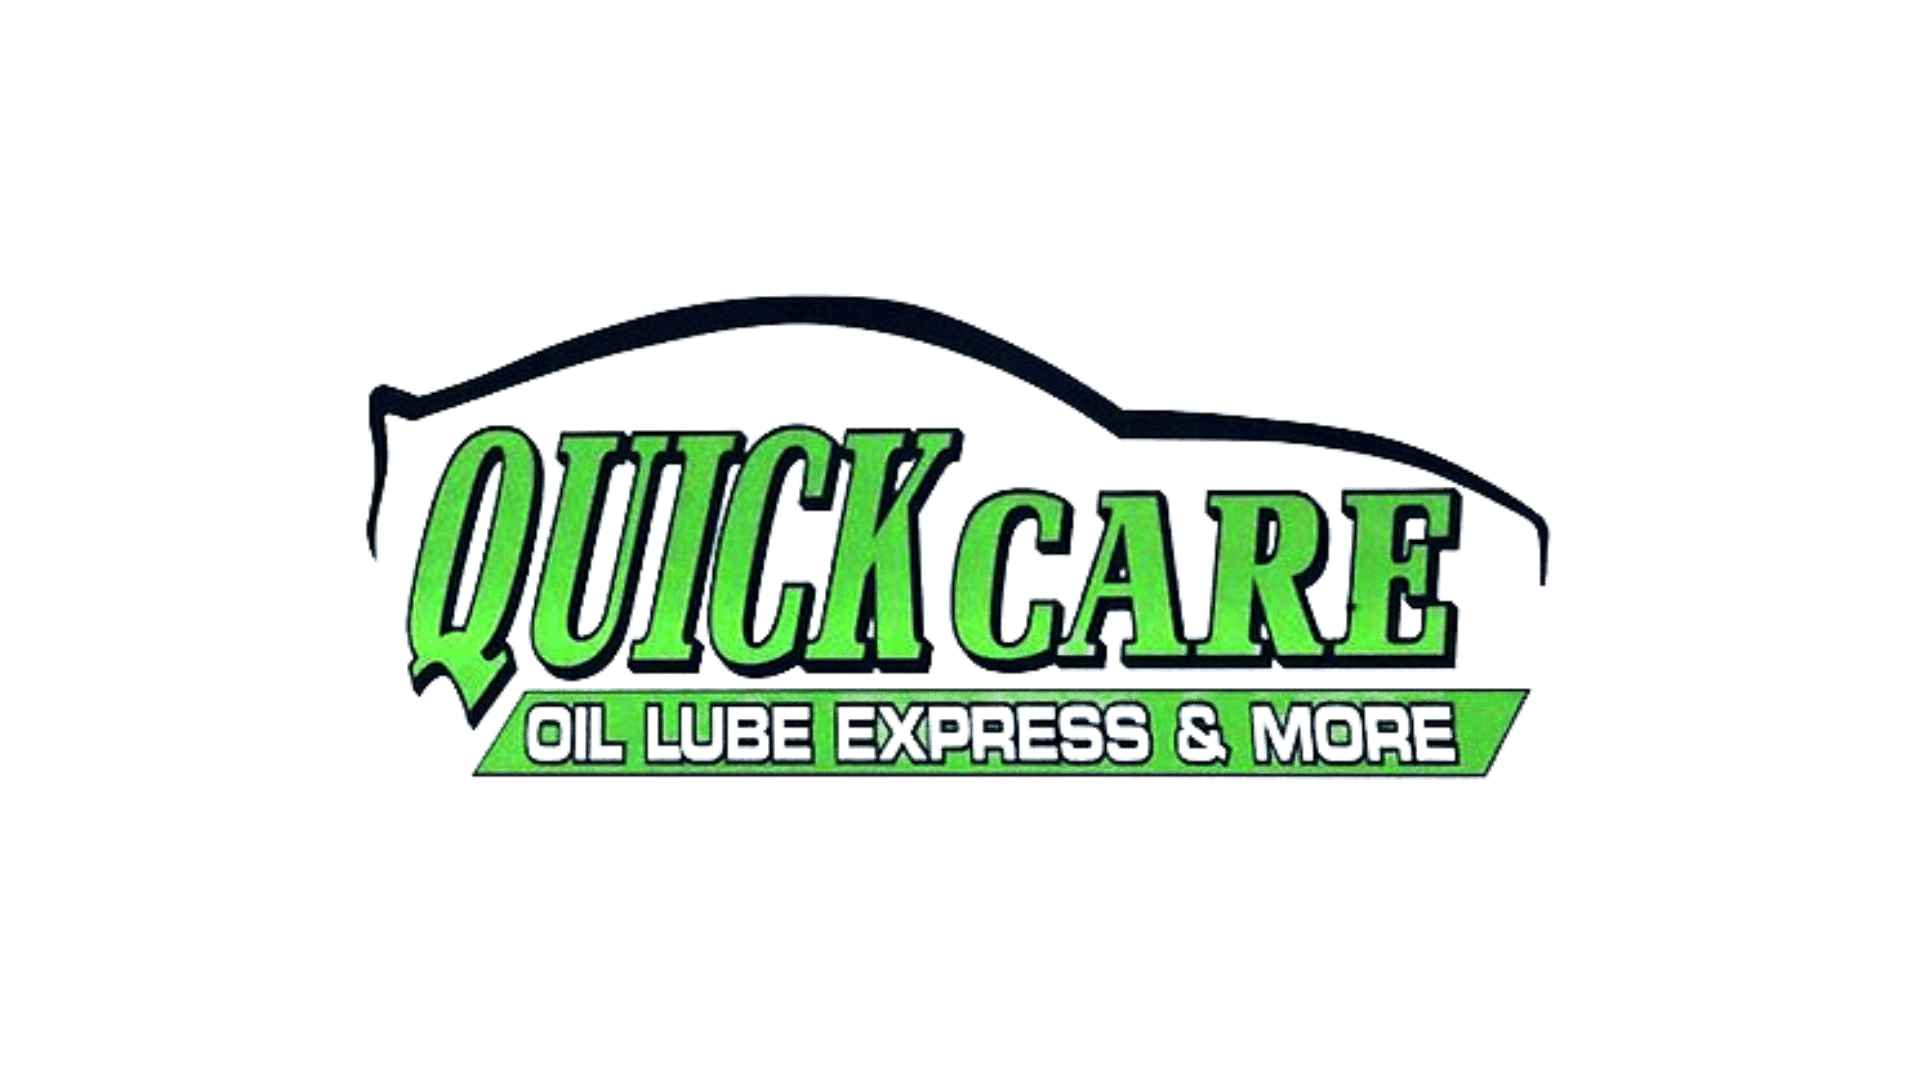 Quick Care Logo